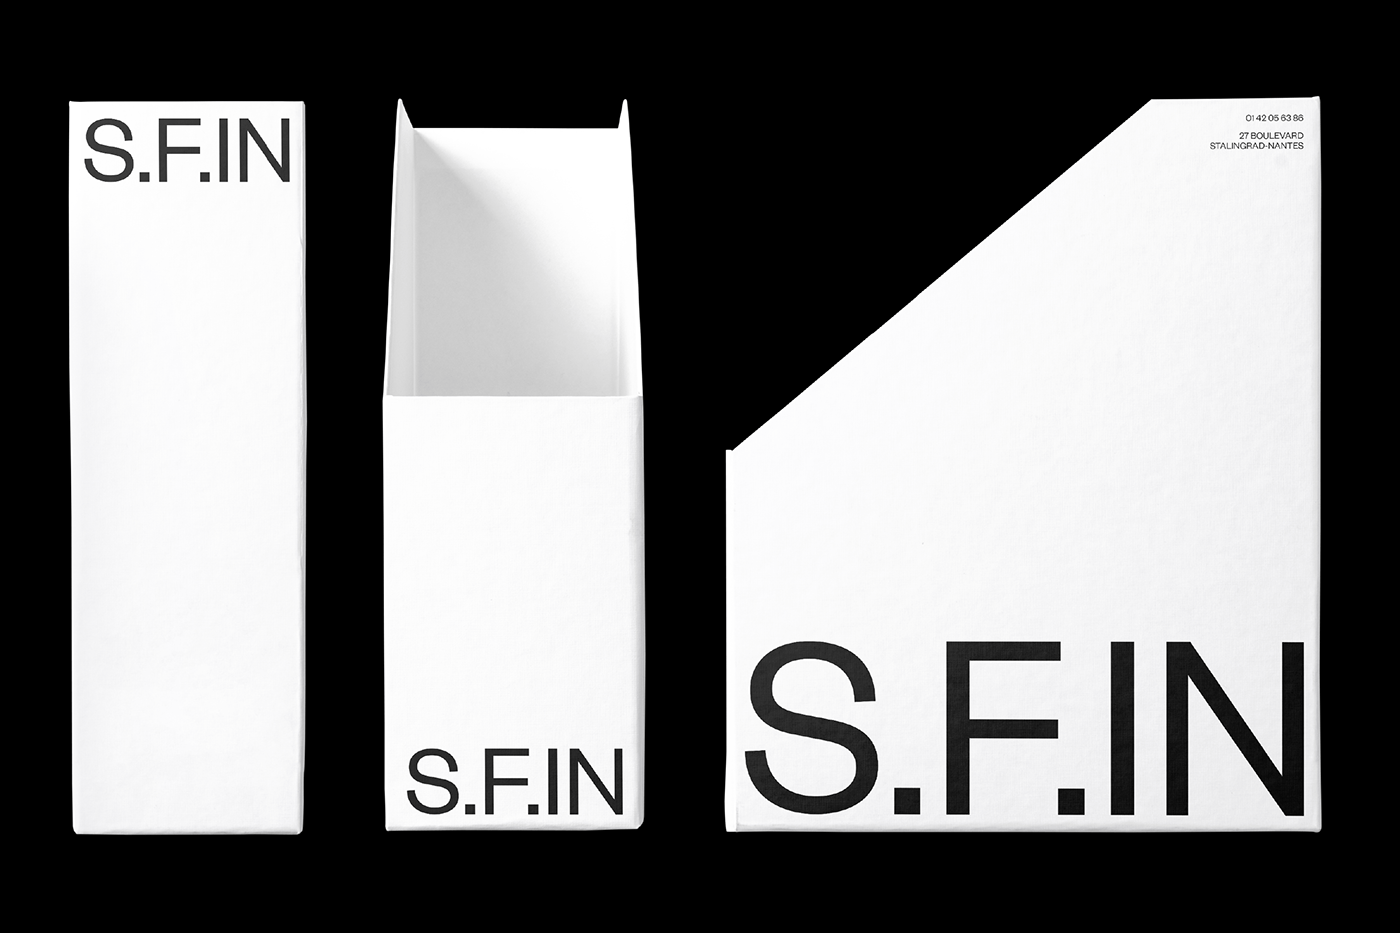 室内设计公司S.F.IN品牌视觉形象